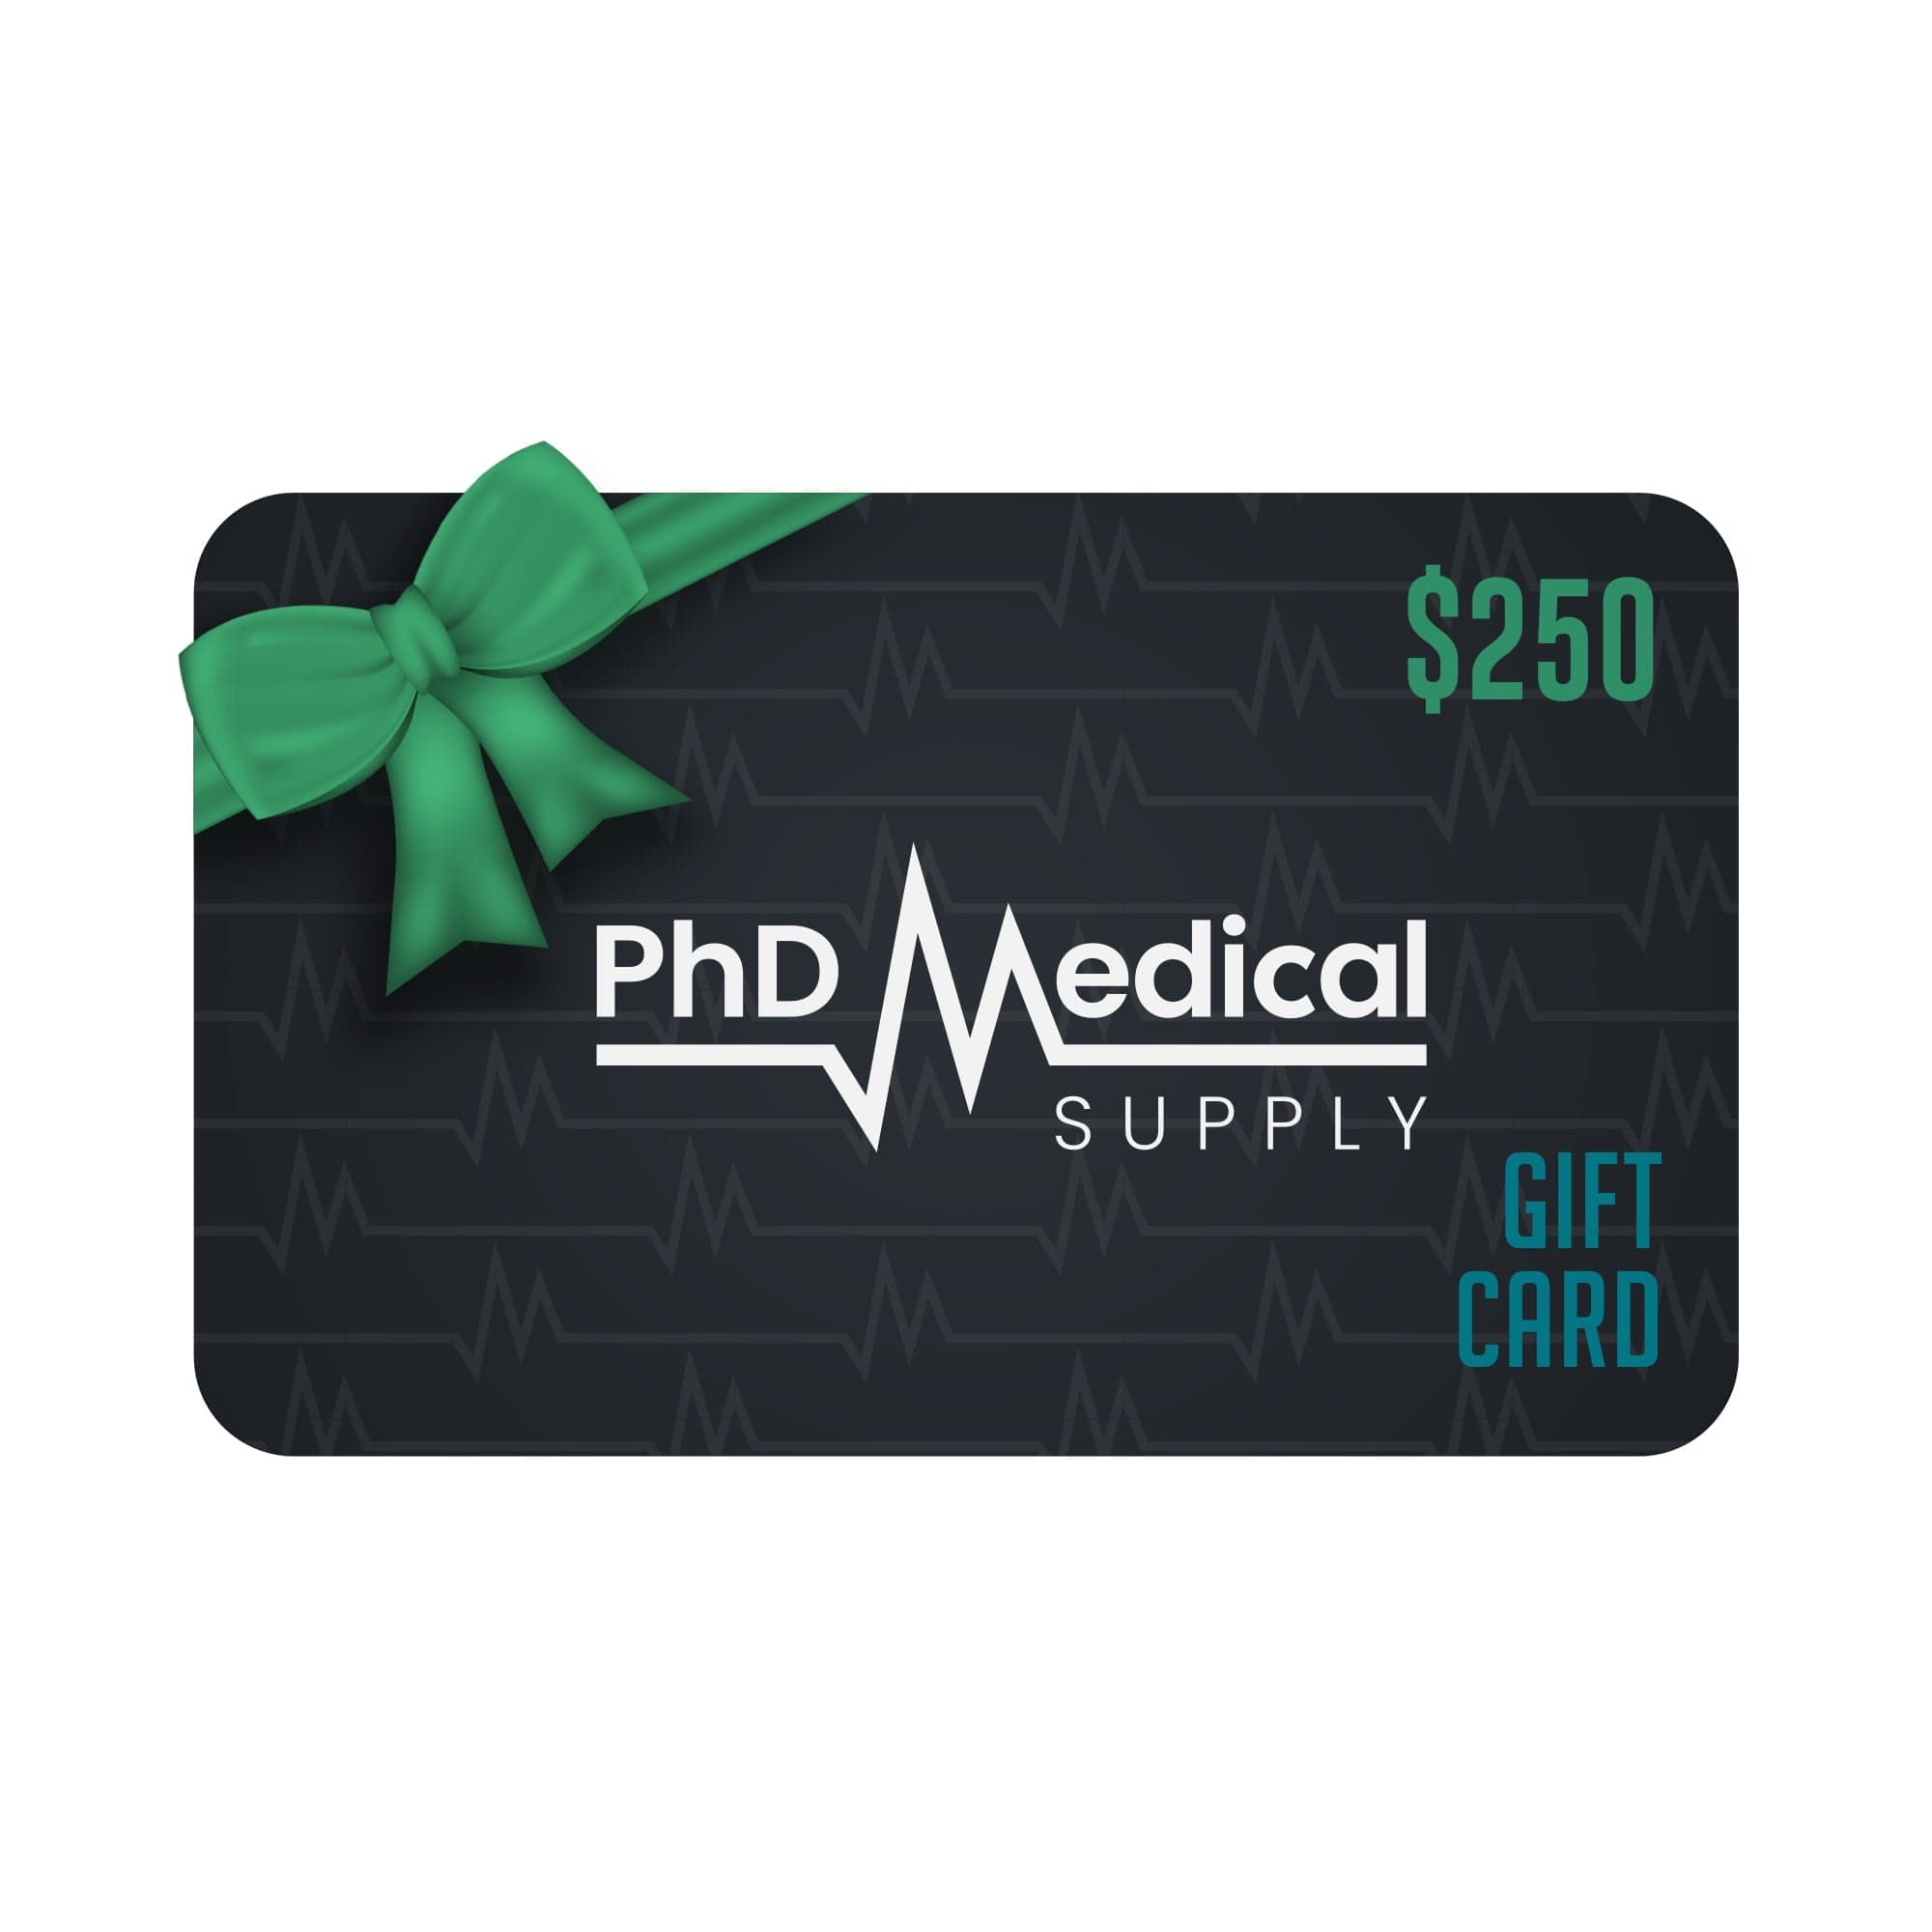 PhD Medical Supply $250.00 PhD Medical Supply Gift Card